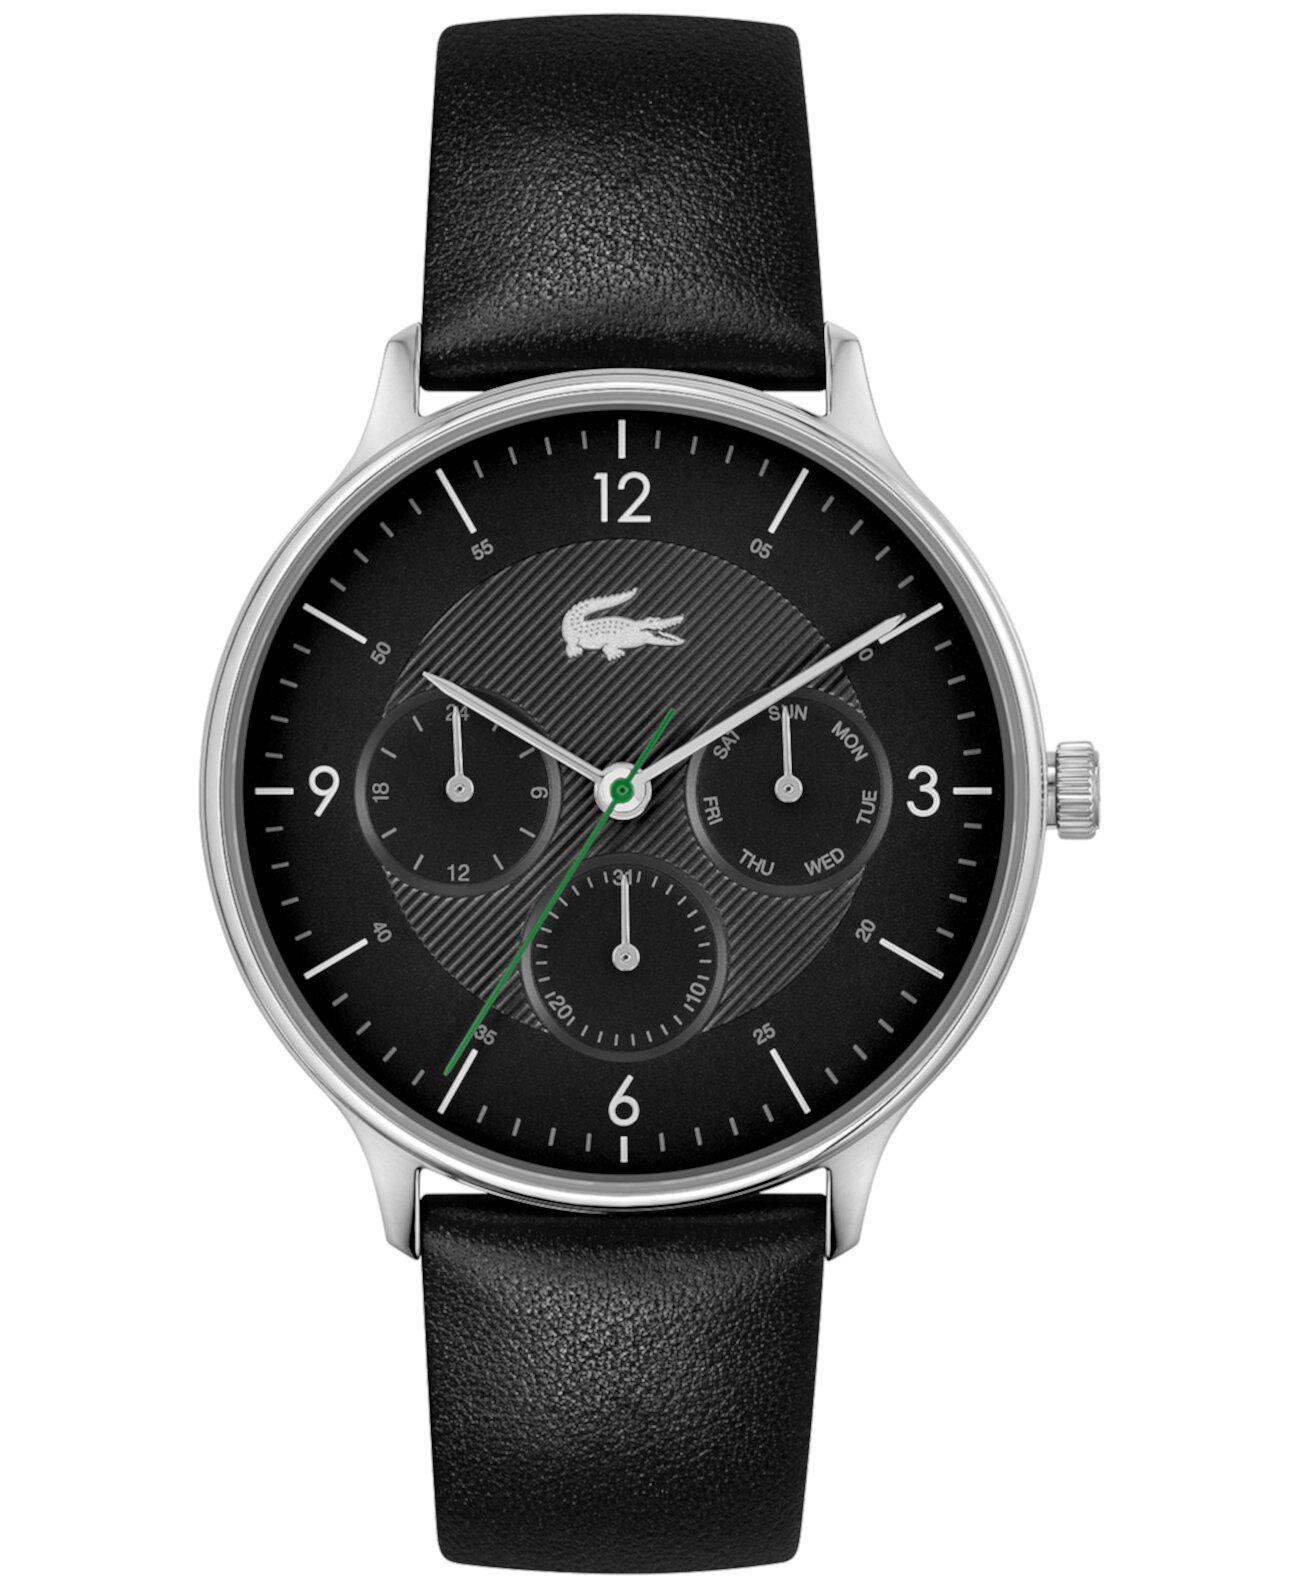 Мужские часы Lacoste Club с черным кожаным ремешком, 42 мм Lacoste